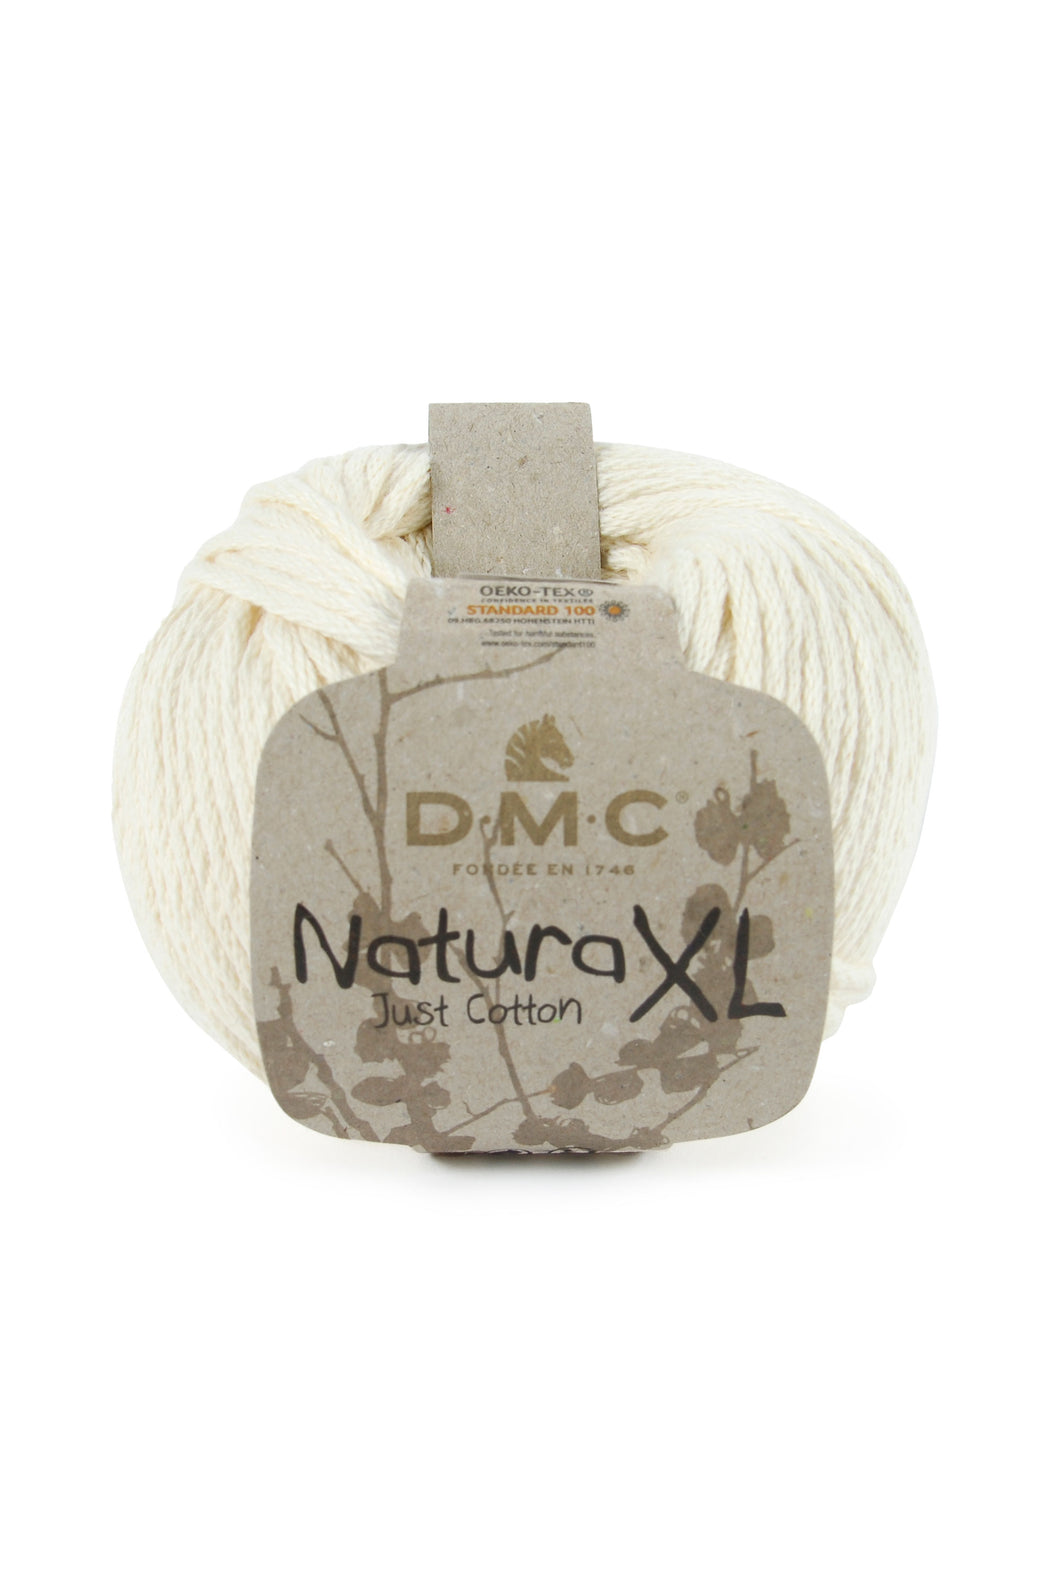 Natura XL 100% coton - DMC